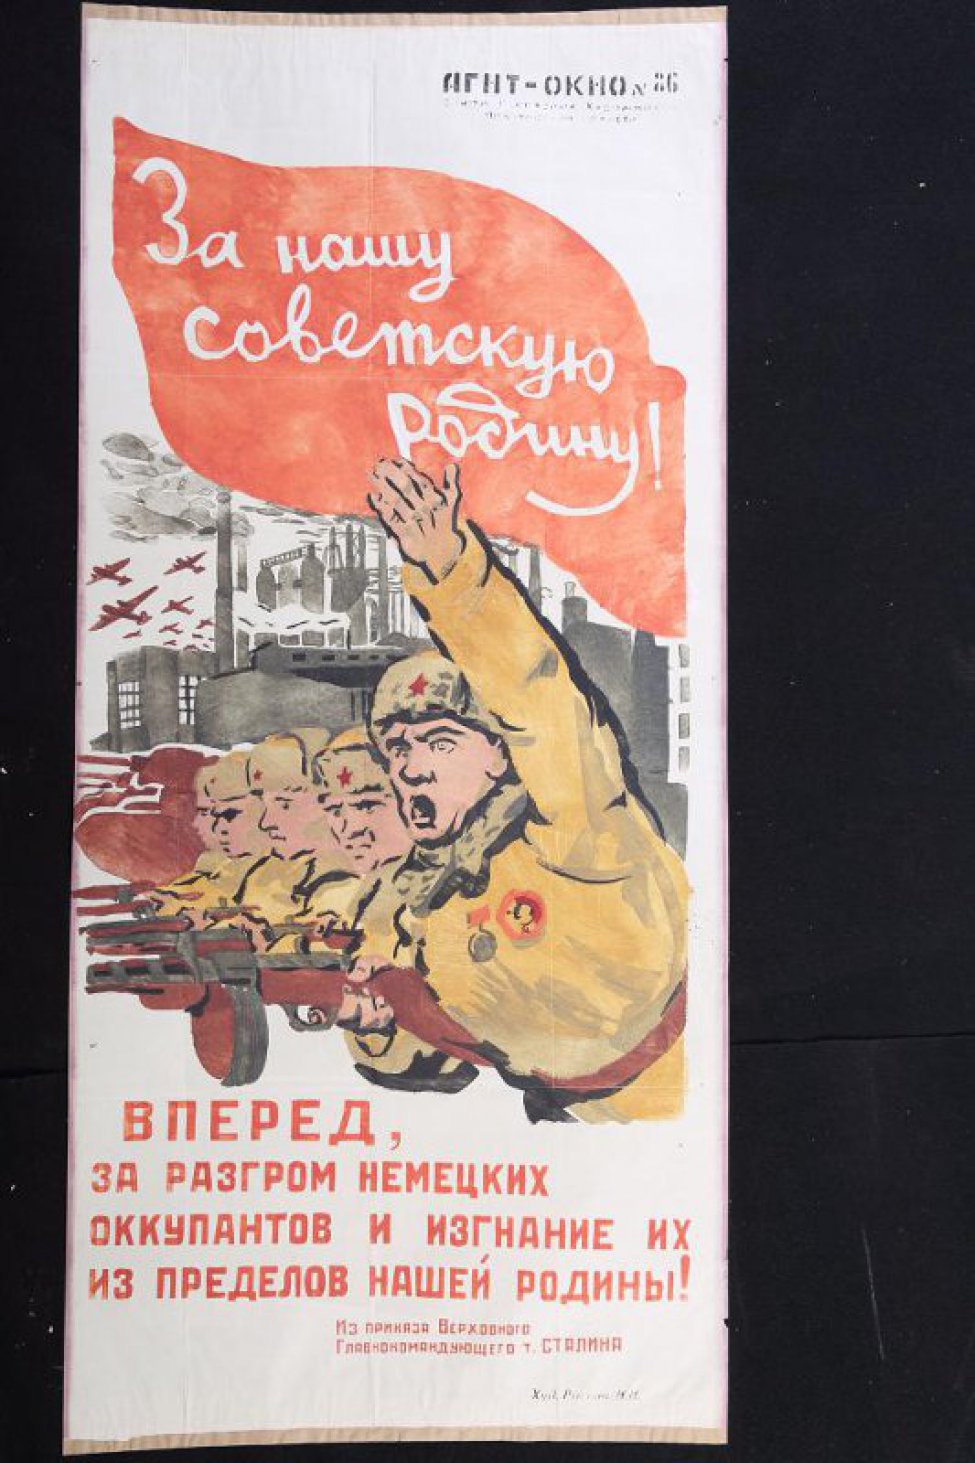 Изображено: группа бойцов с автоматами в руках идут в наступление. За ними: заводы, домны. Над всем красное знамя с надписью: "За нашу советскую Родину!"